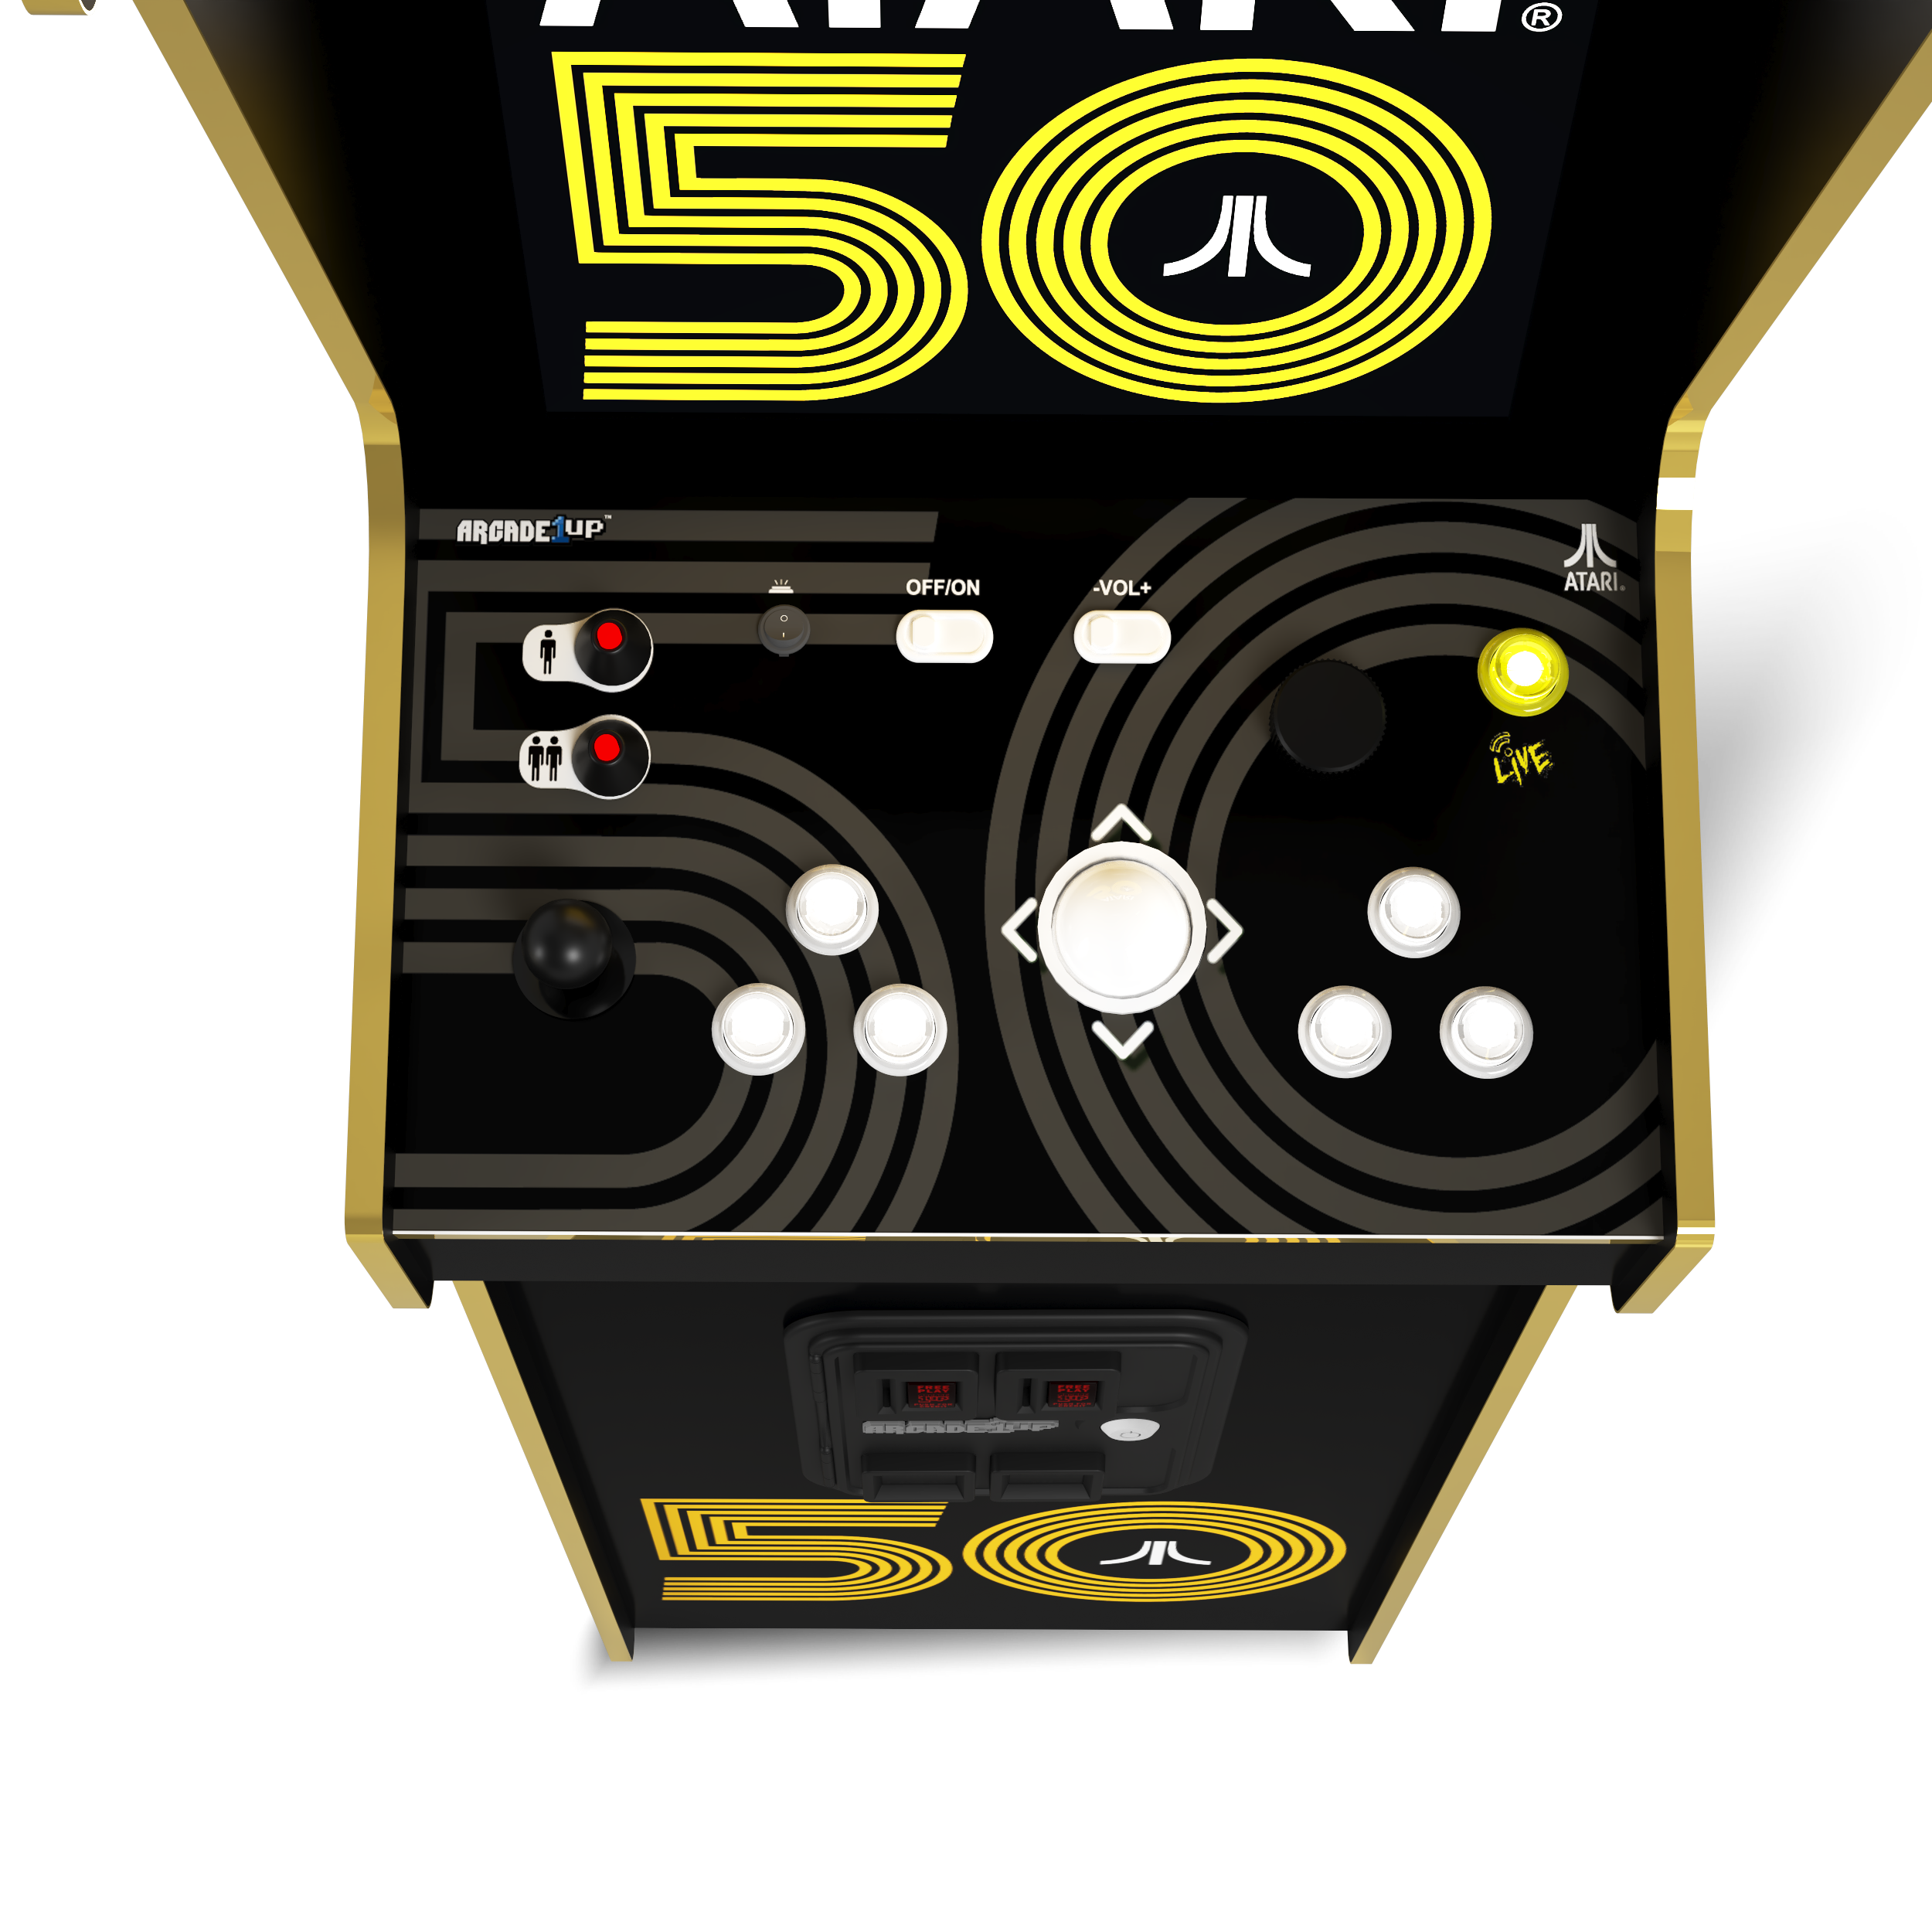 Atari 50th Anniversary